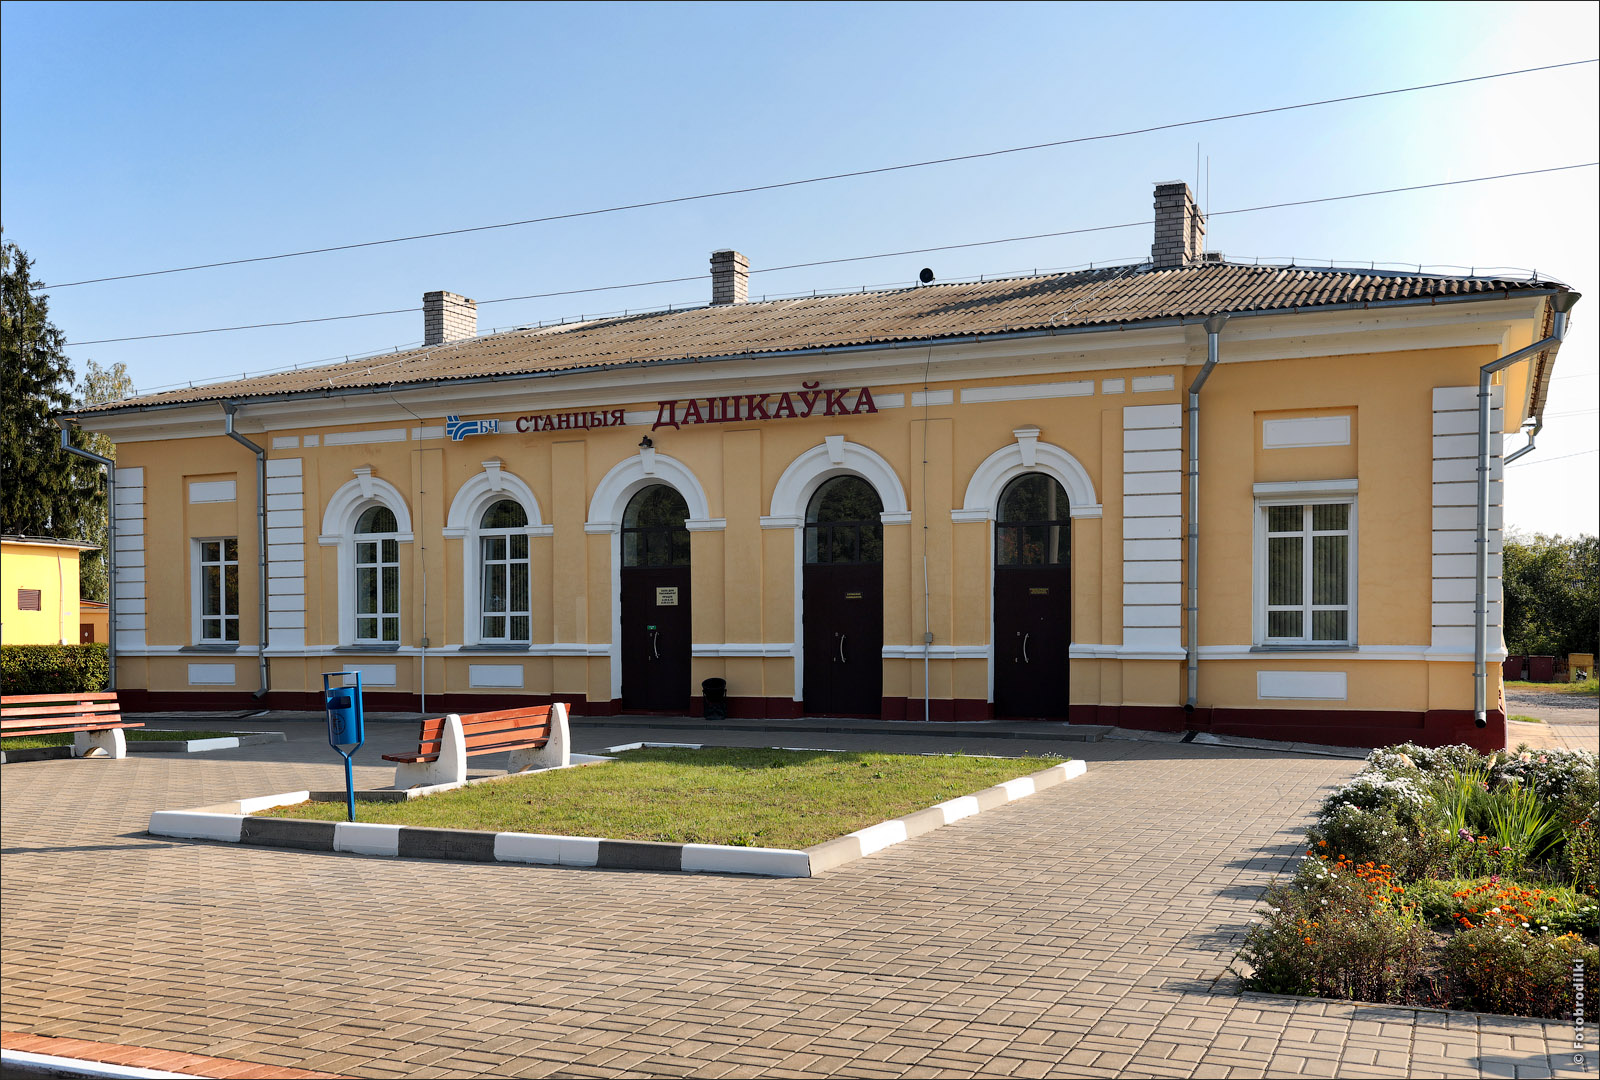 Железнодорожная станция, Дашковка, Беларусь